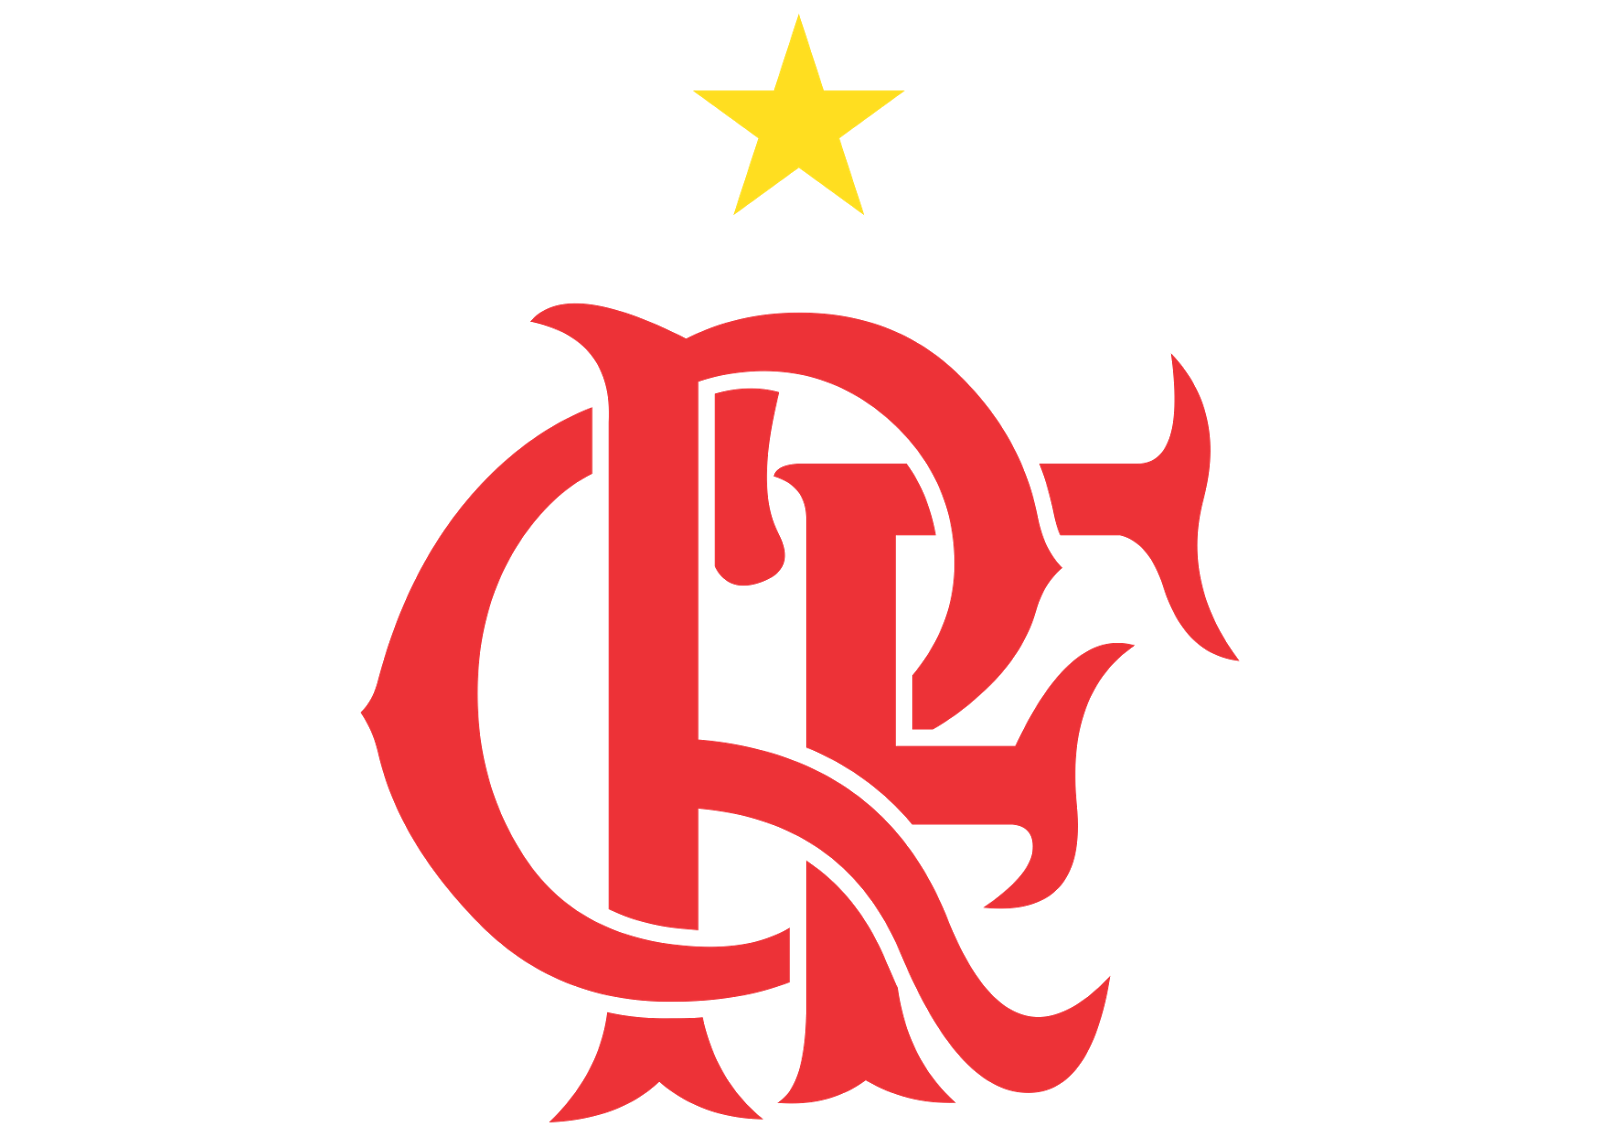 clube regatas flamengo logo vector format cdr #41051